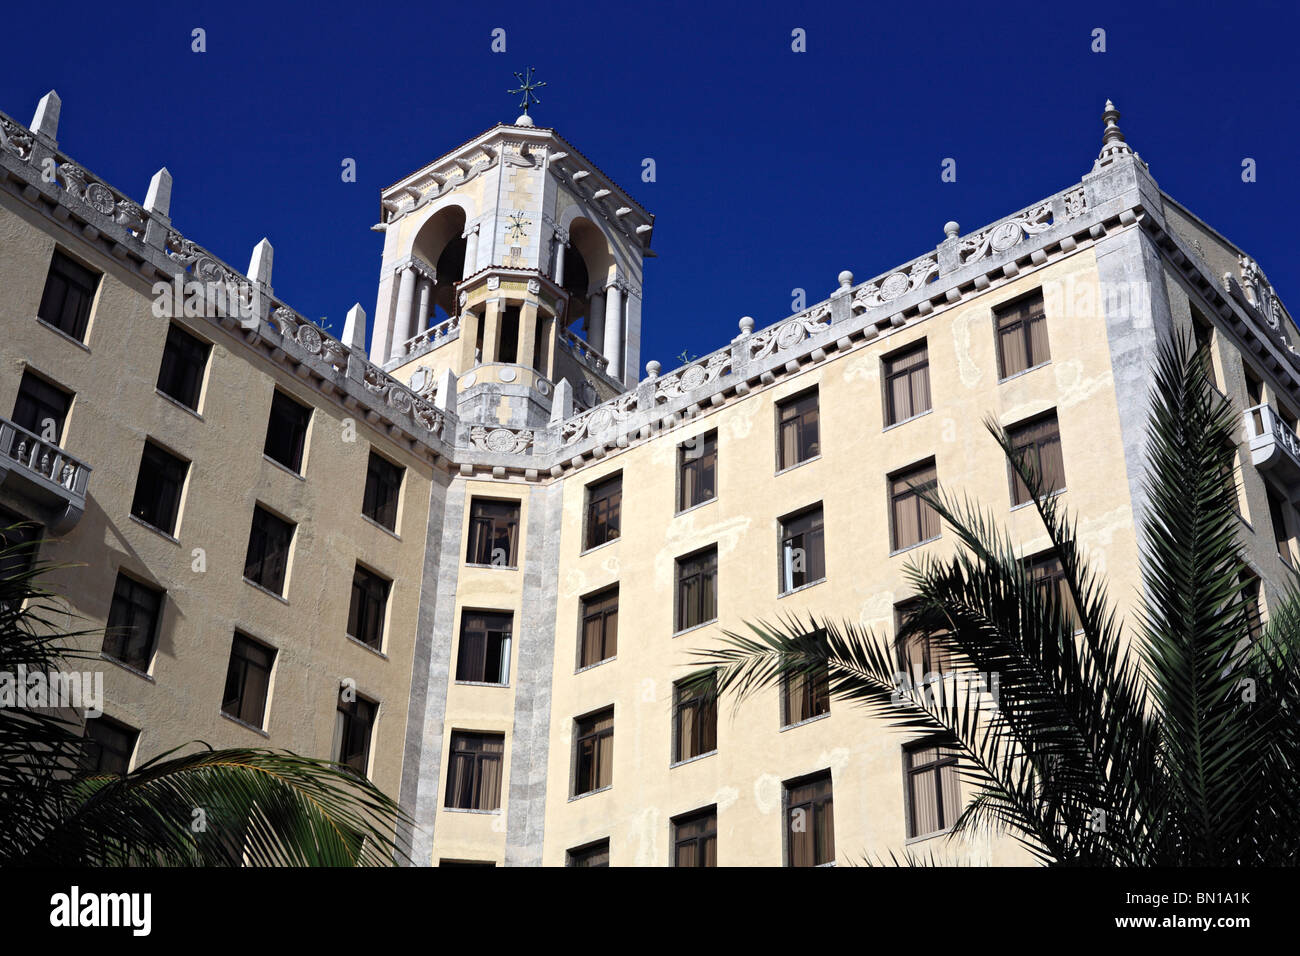 Hotel Nacional de Cuba (1930), Havana, Cuba Stock Photo - Alamy